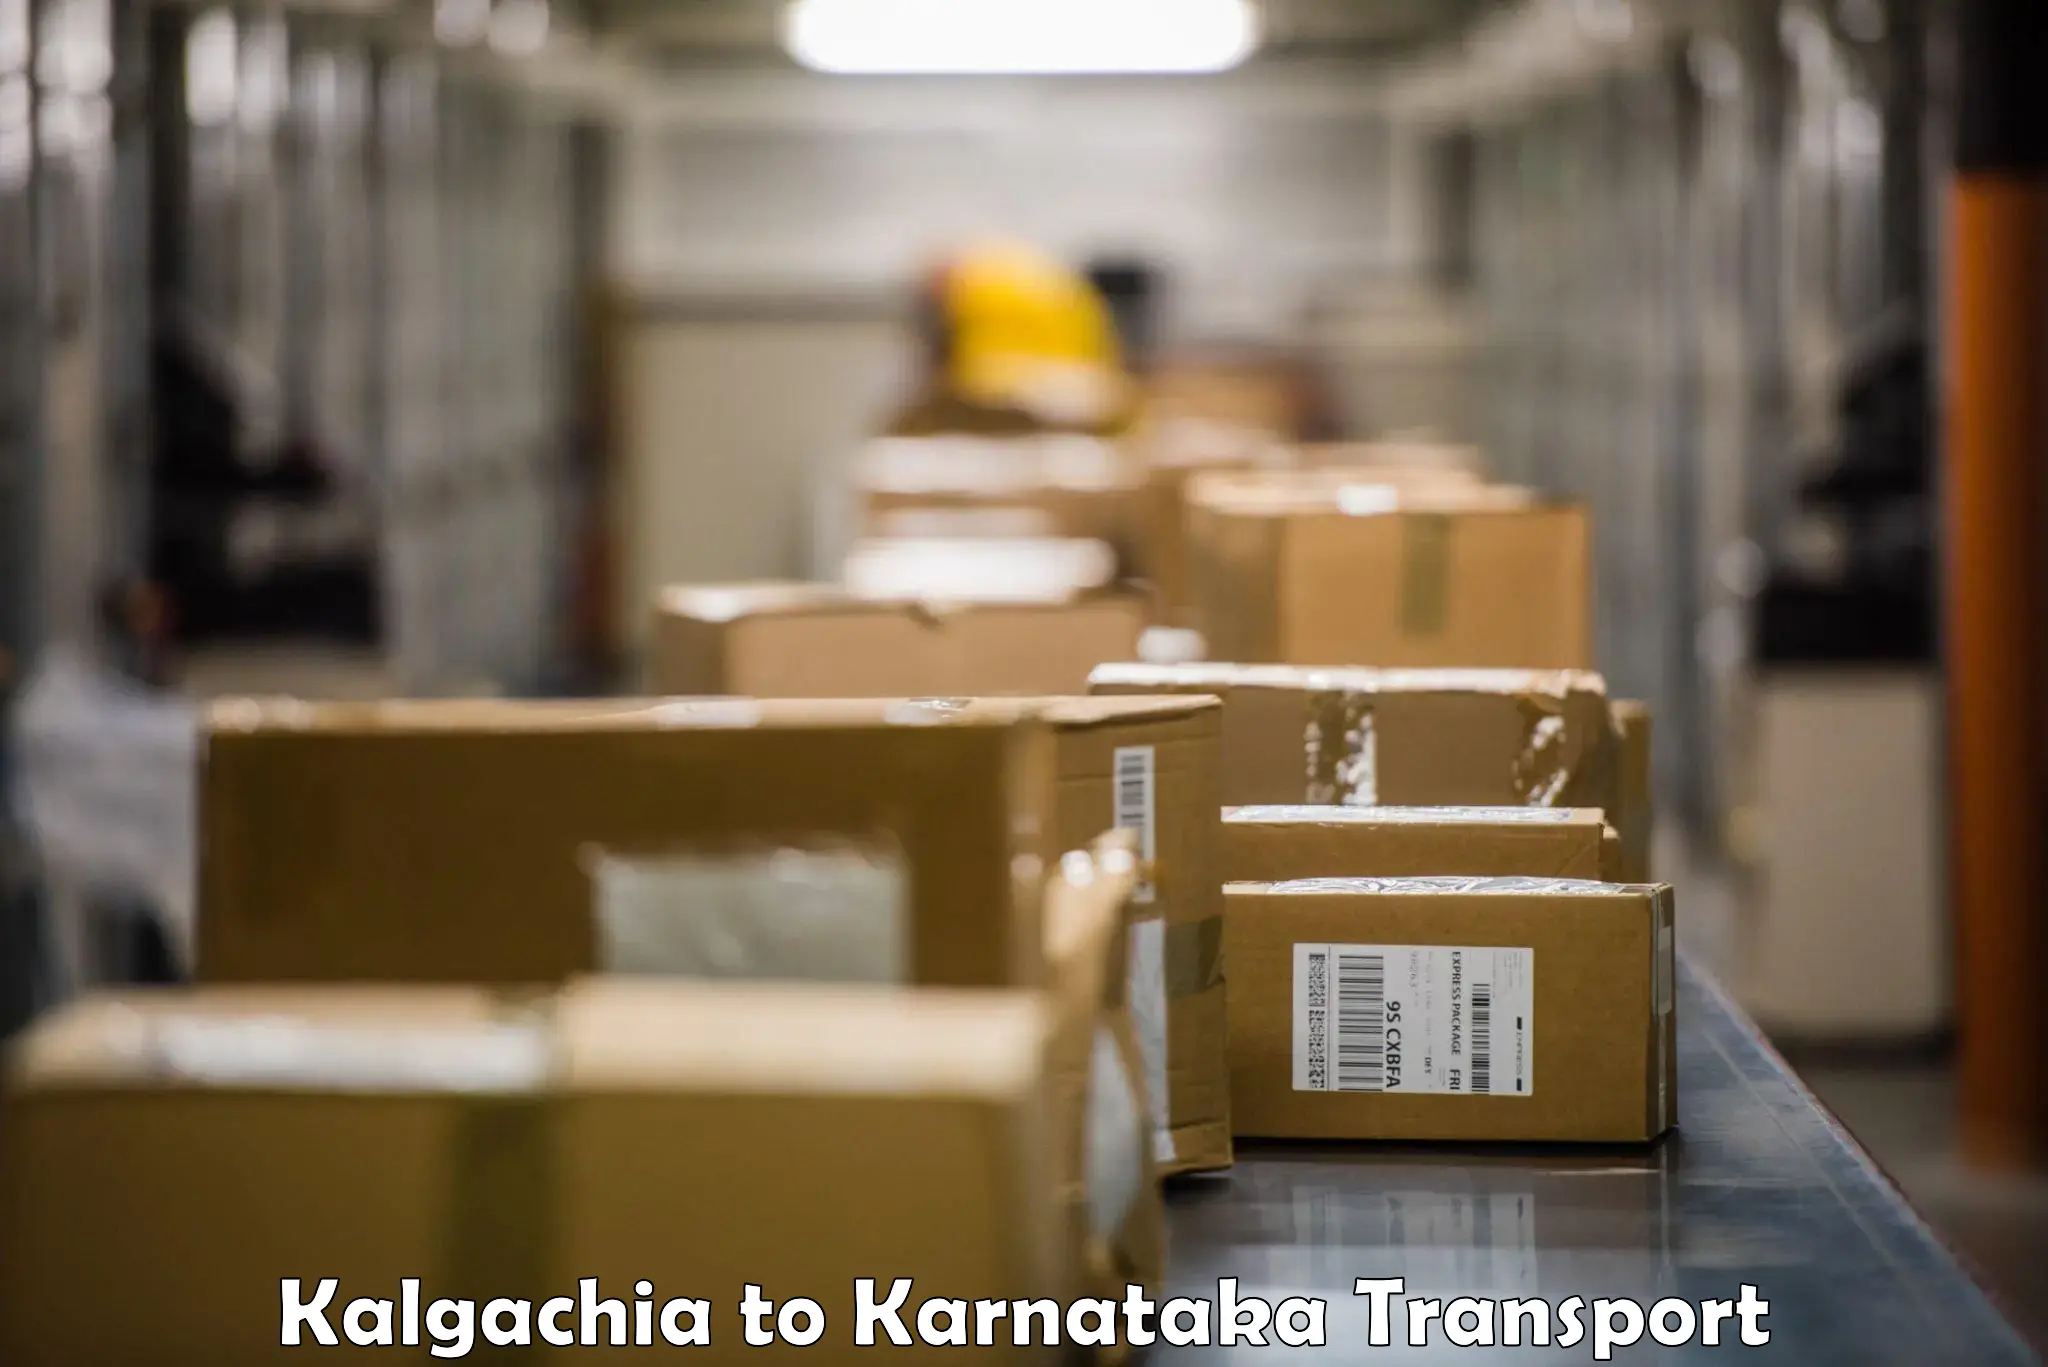 Door to door transport services Kalgachia to Harohalli